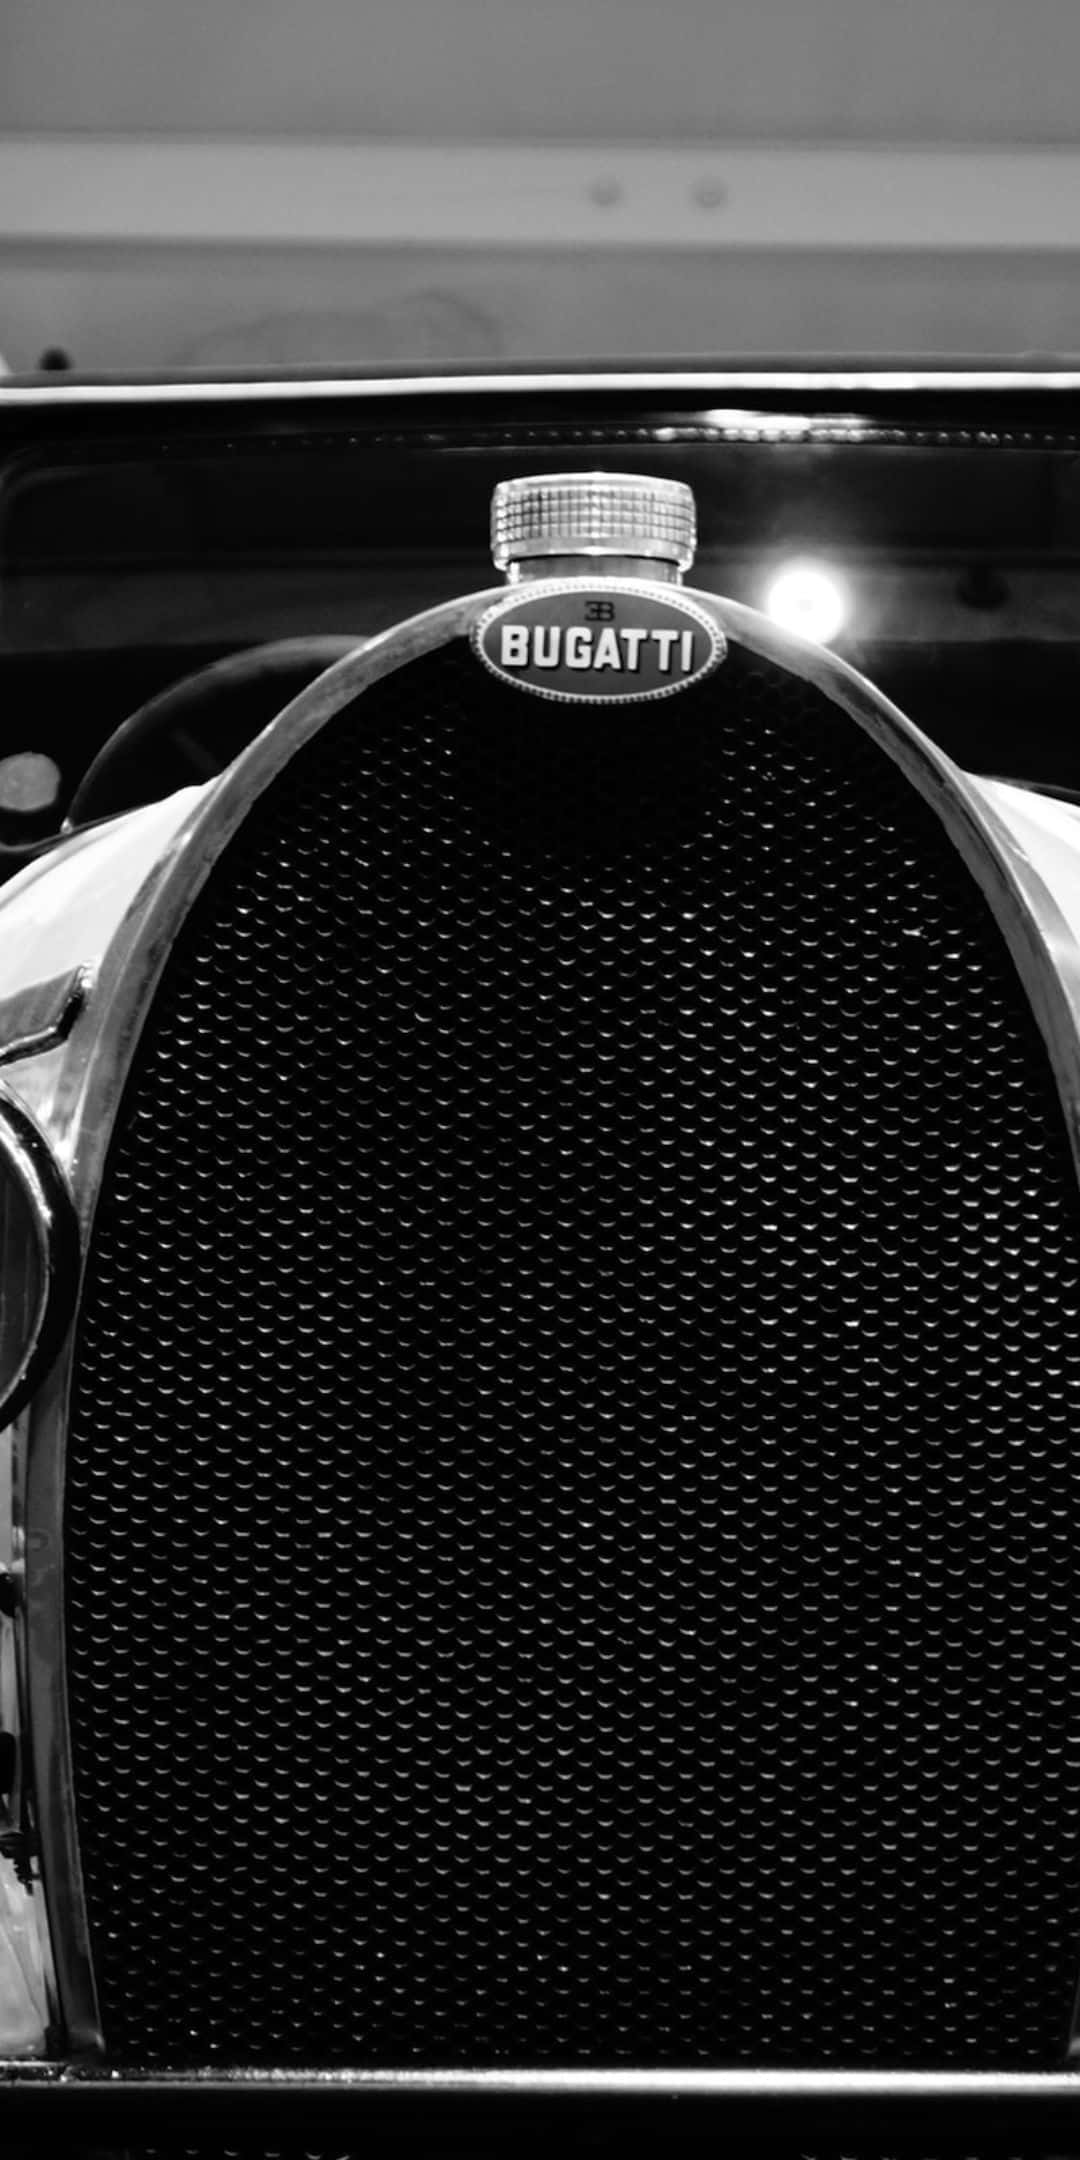 Fondode Pantalla Del Bugatti Con El Logotipo Del Radiador Type 55 Para El Pixel 3.